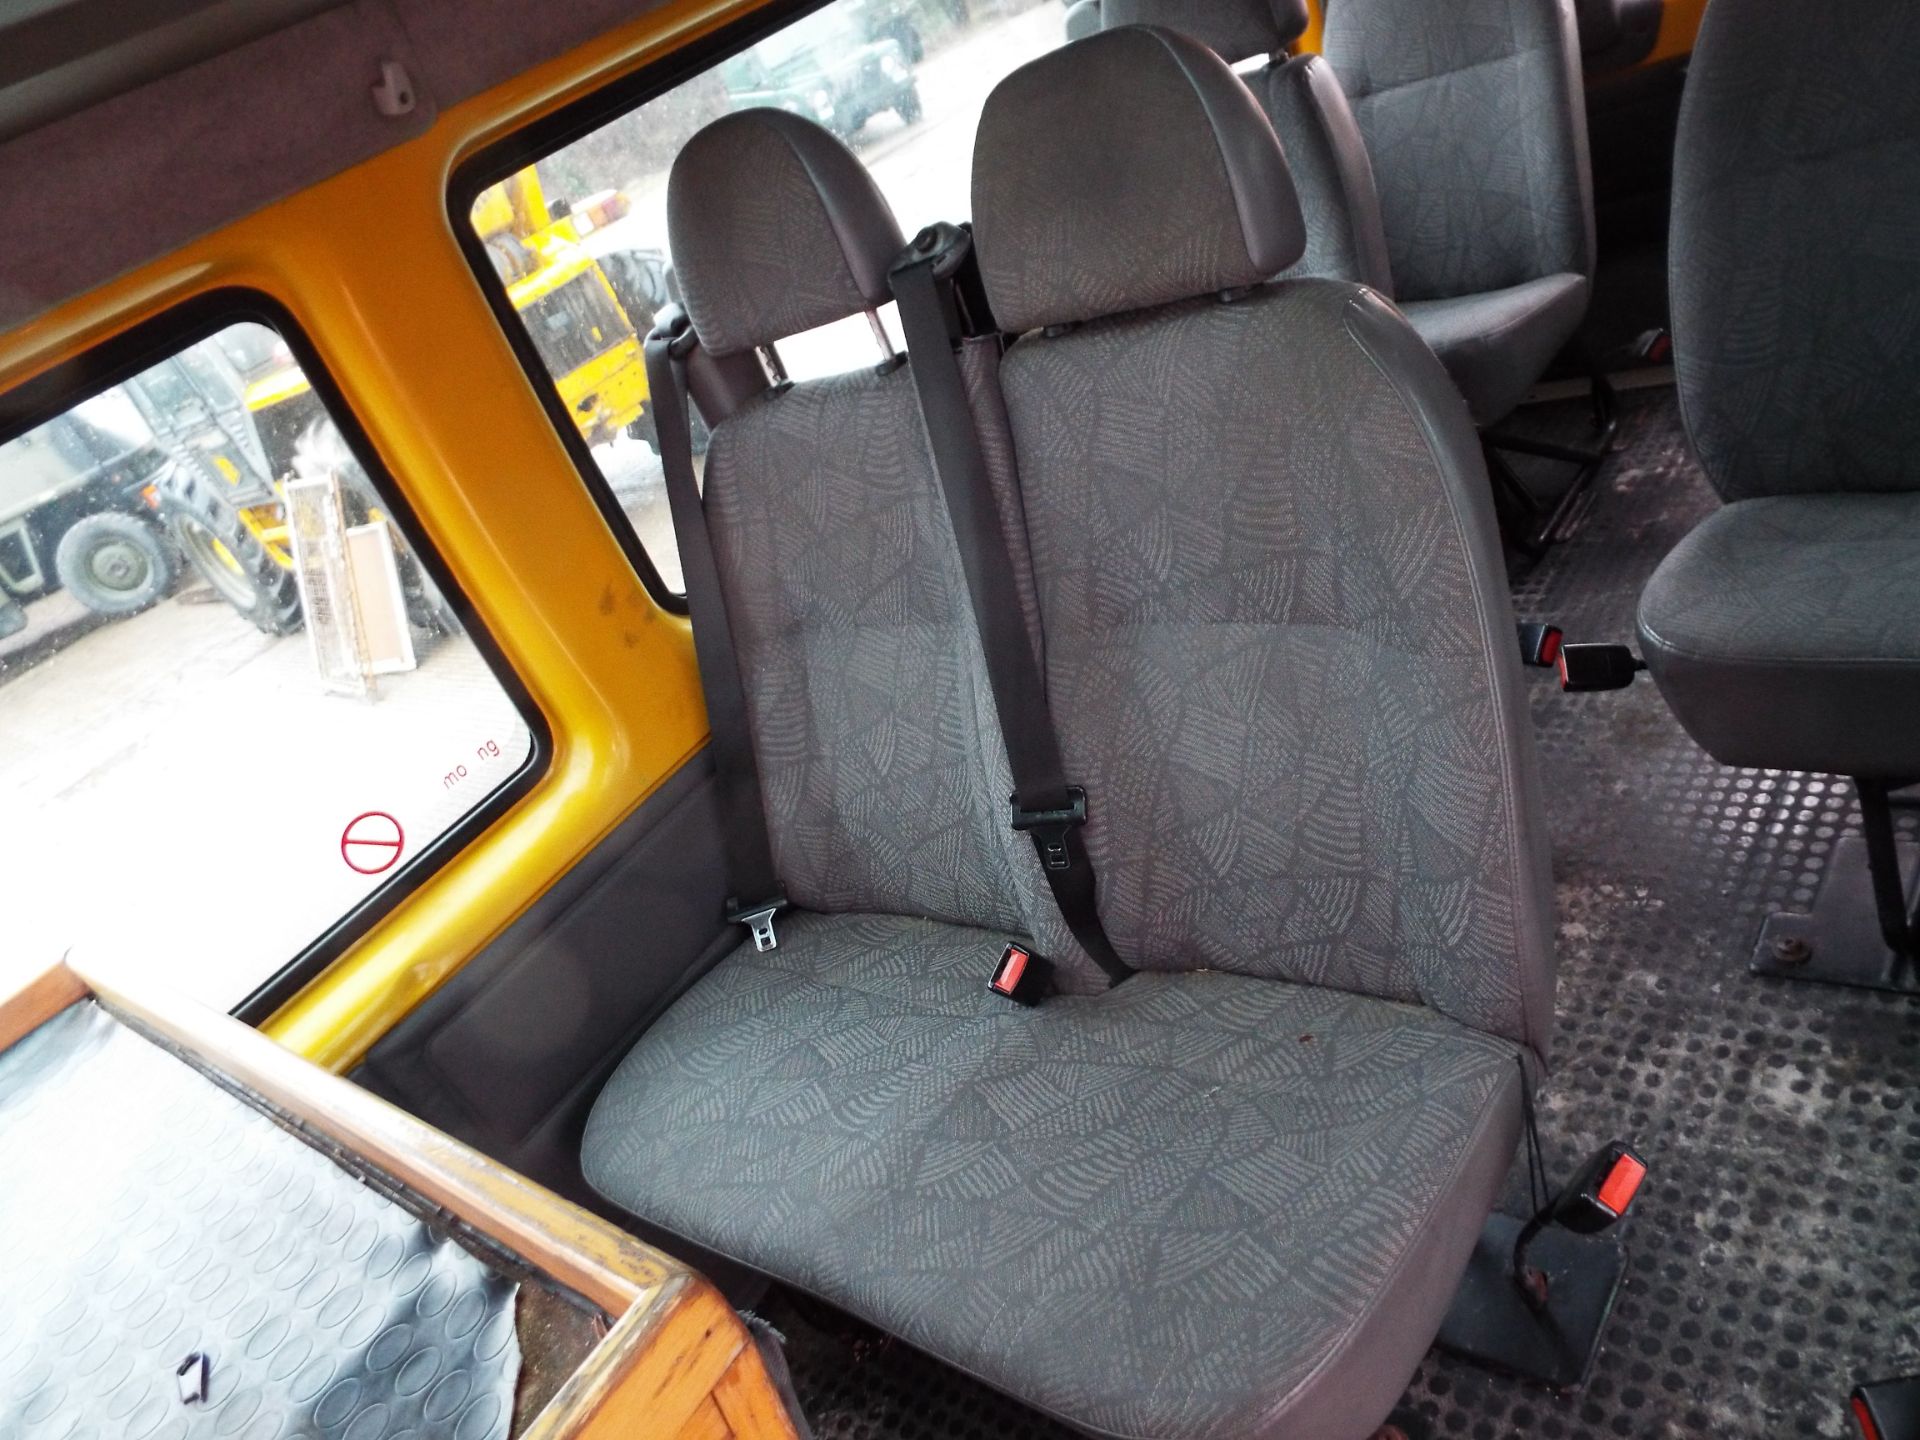 Ford Transit 11 Seat Minibus - Image 14 of 21